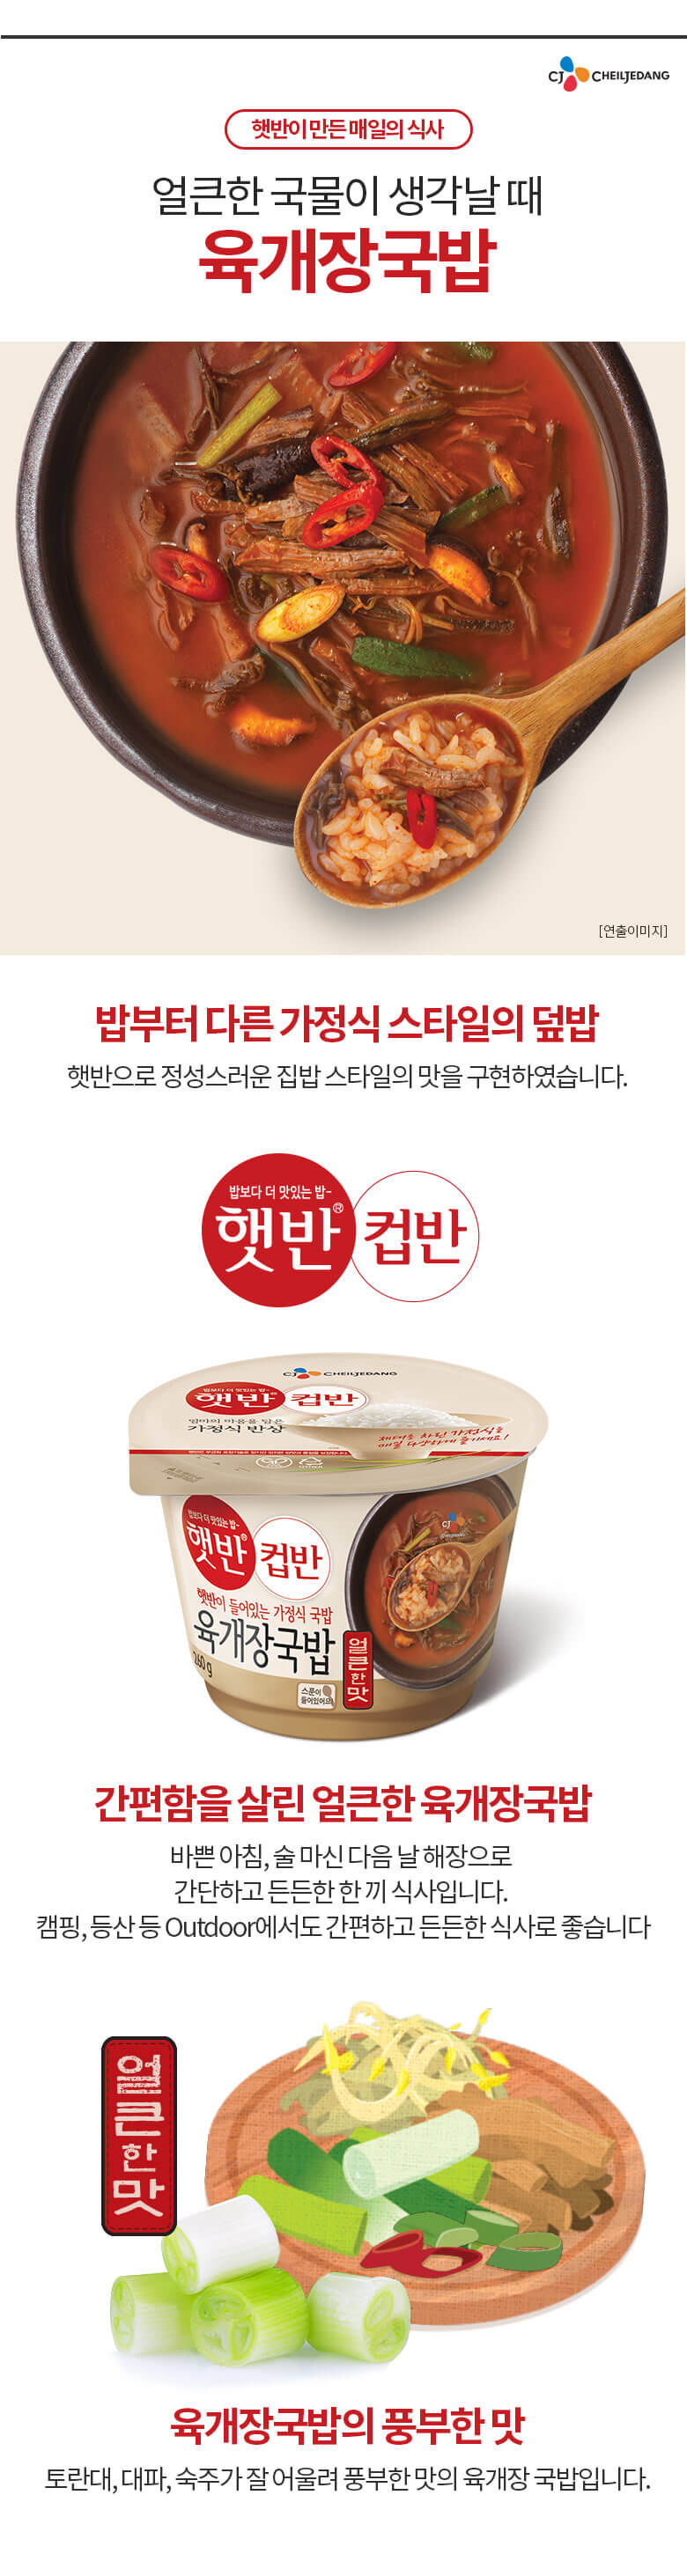 韓國食品-[CJ] 컵반[육개장국밥] 260g